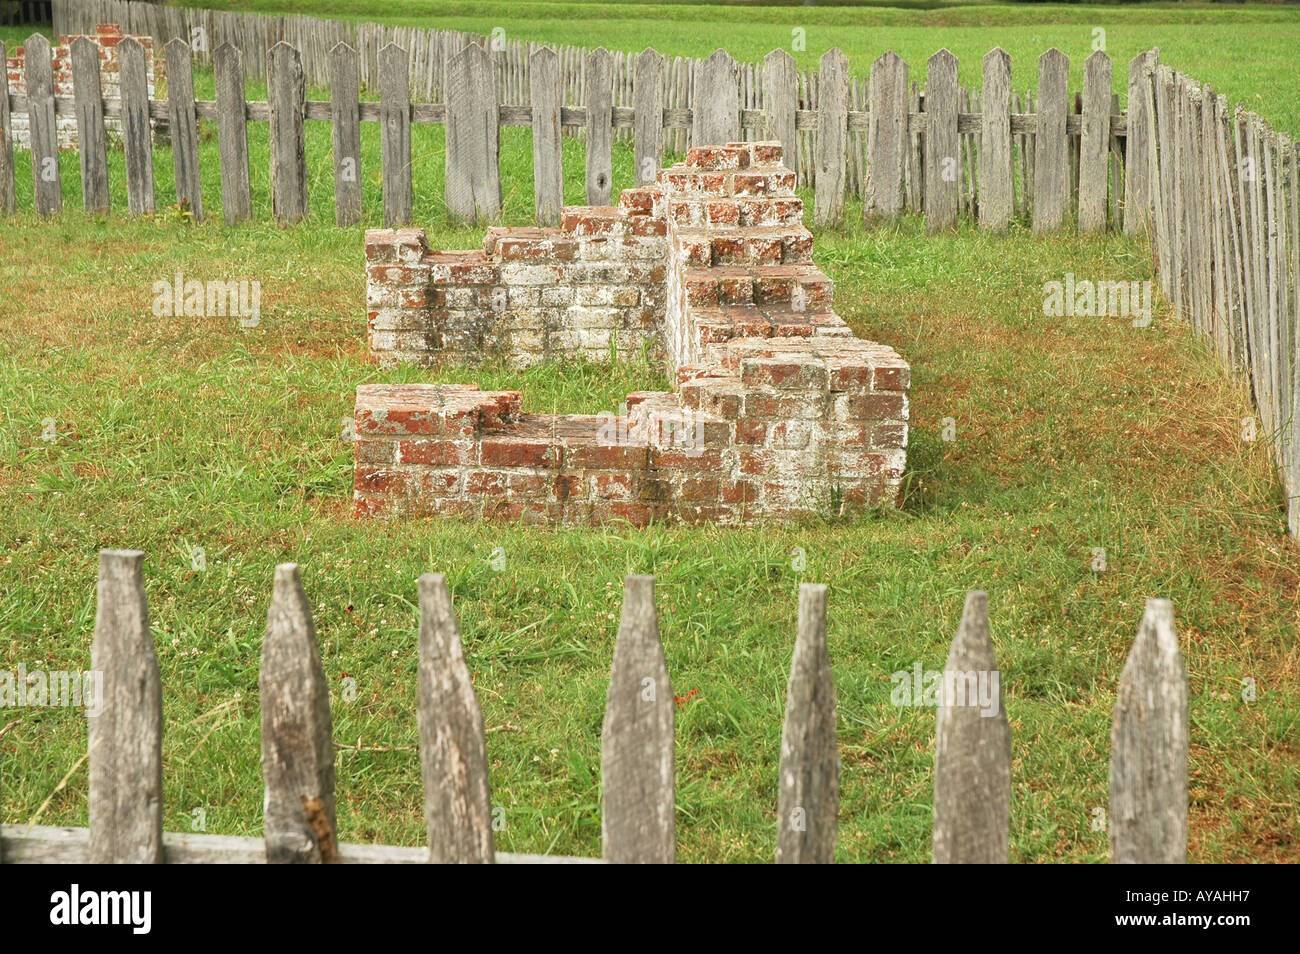 Historischen Jamestown Landung ursprüngliche Siedlung archäologische Ausgrabungen alte Ziegel Stiftung Stockfoto